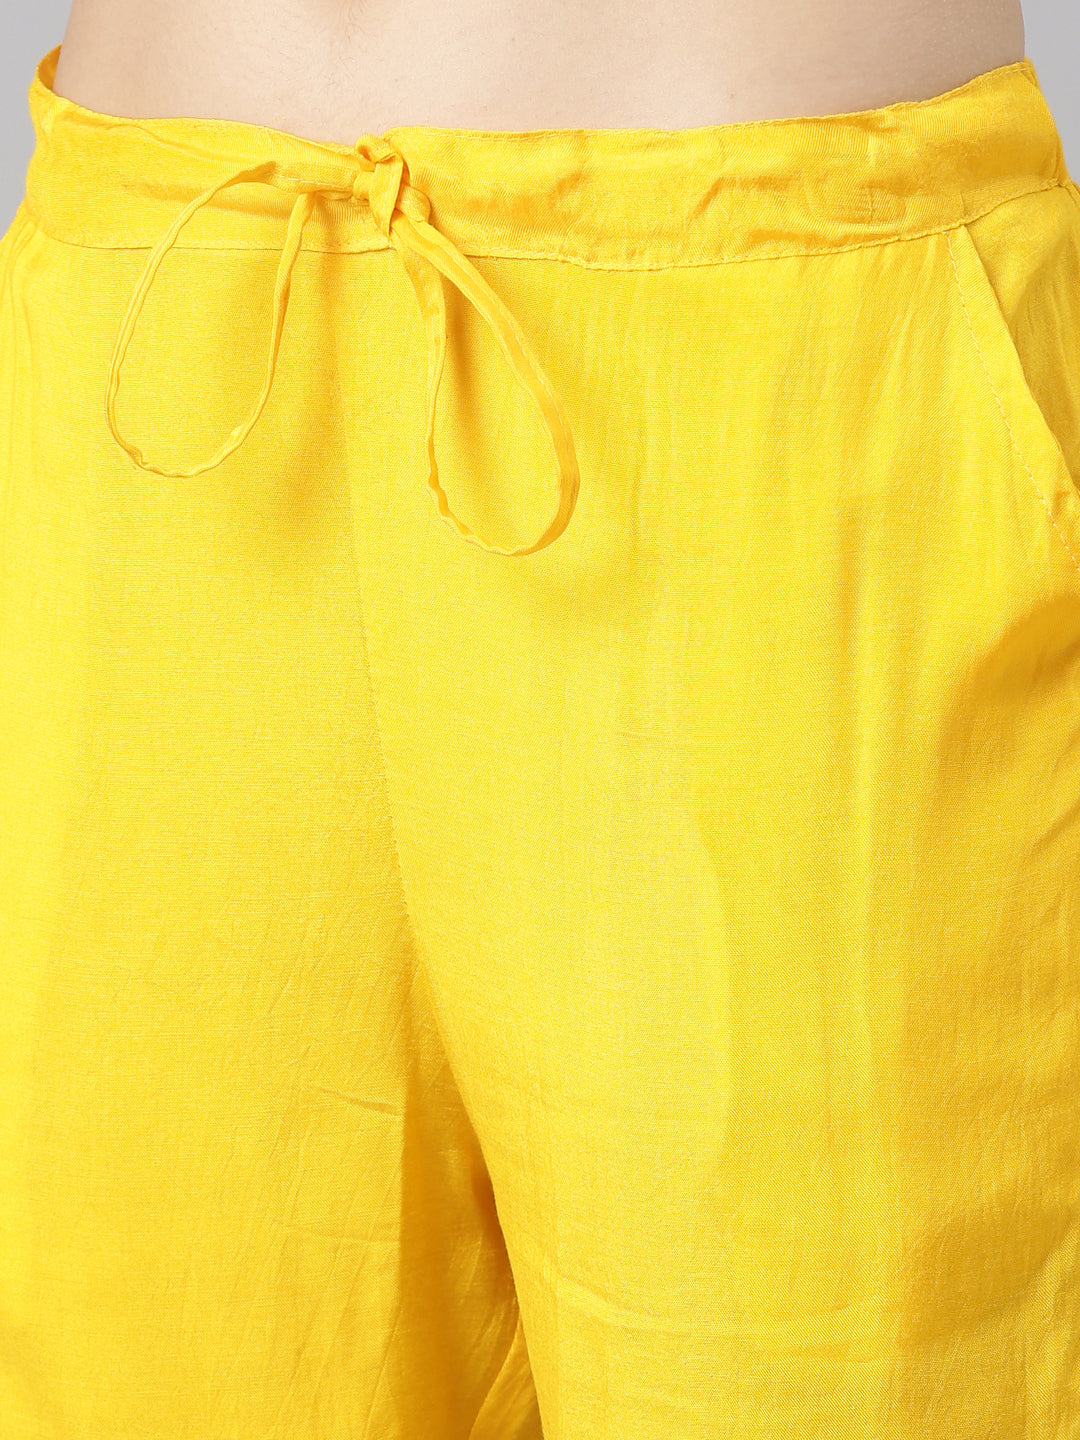 Neerus Yellow Regular Straight Printed Kurta And Trousers With Dupatta